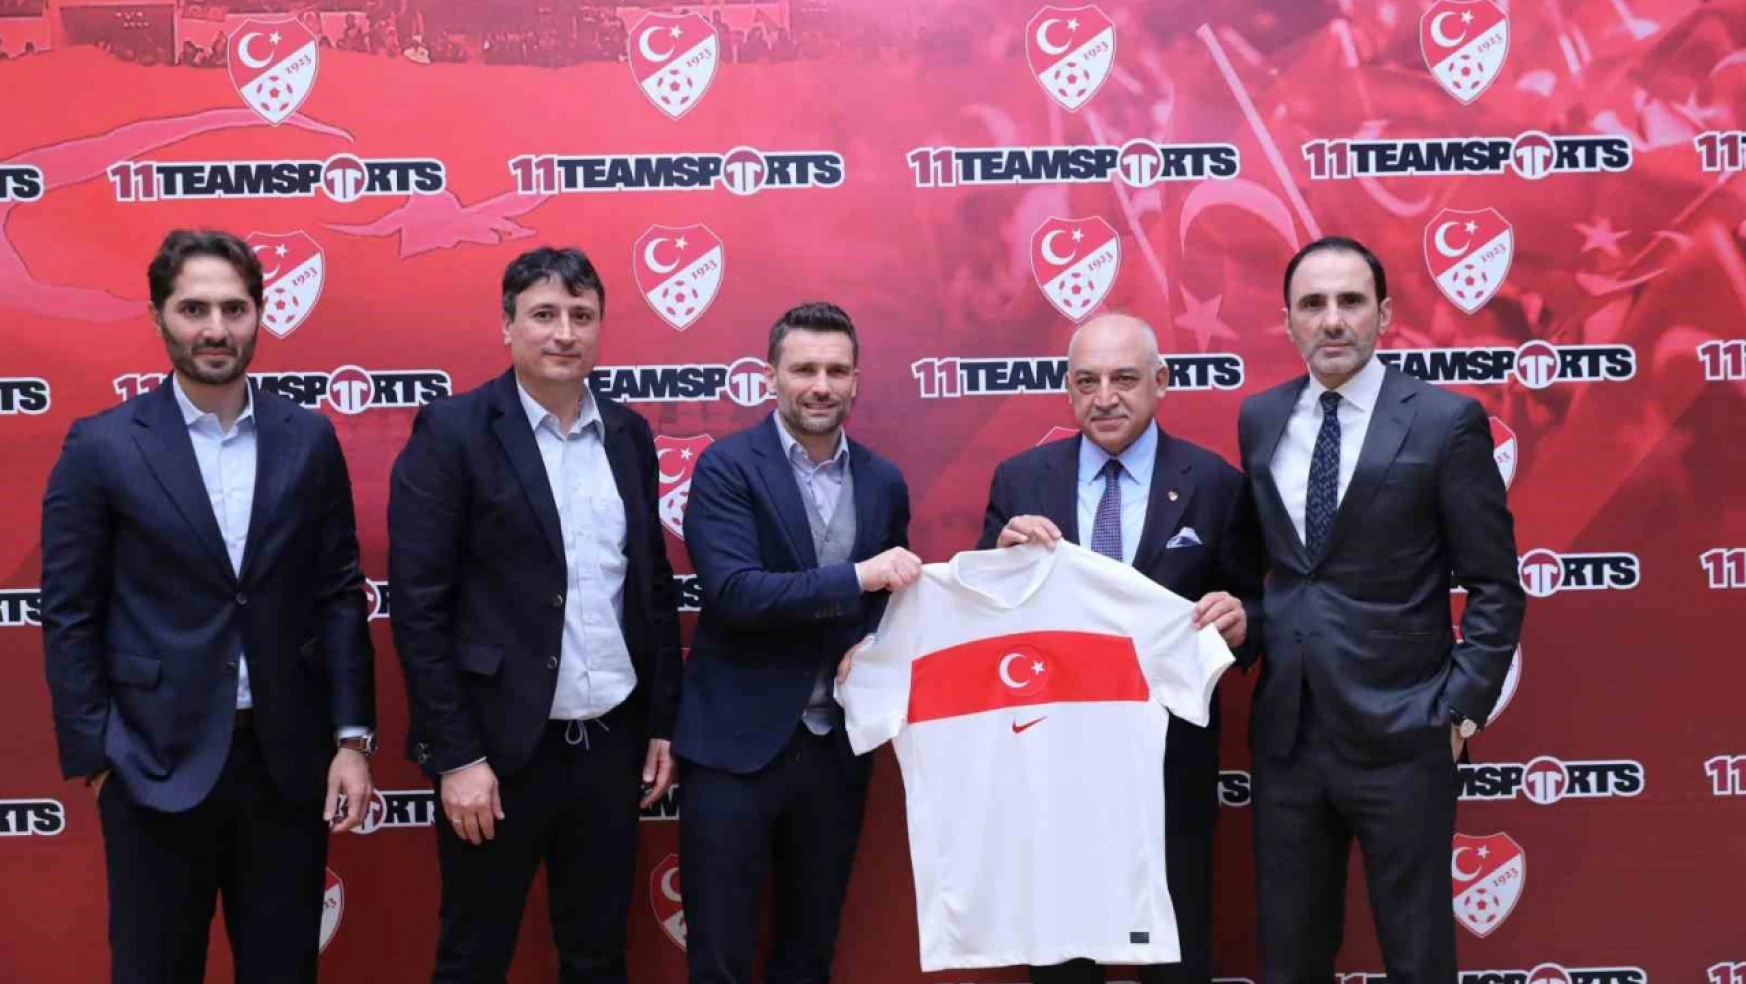 Türkiye Futbol Federasyonu'nun mağazacılık ortağı 11teamsports Group oldu